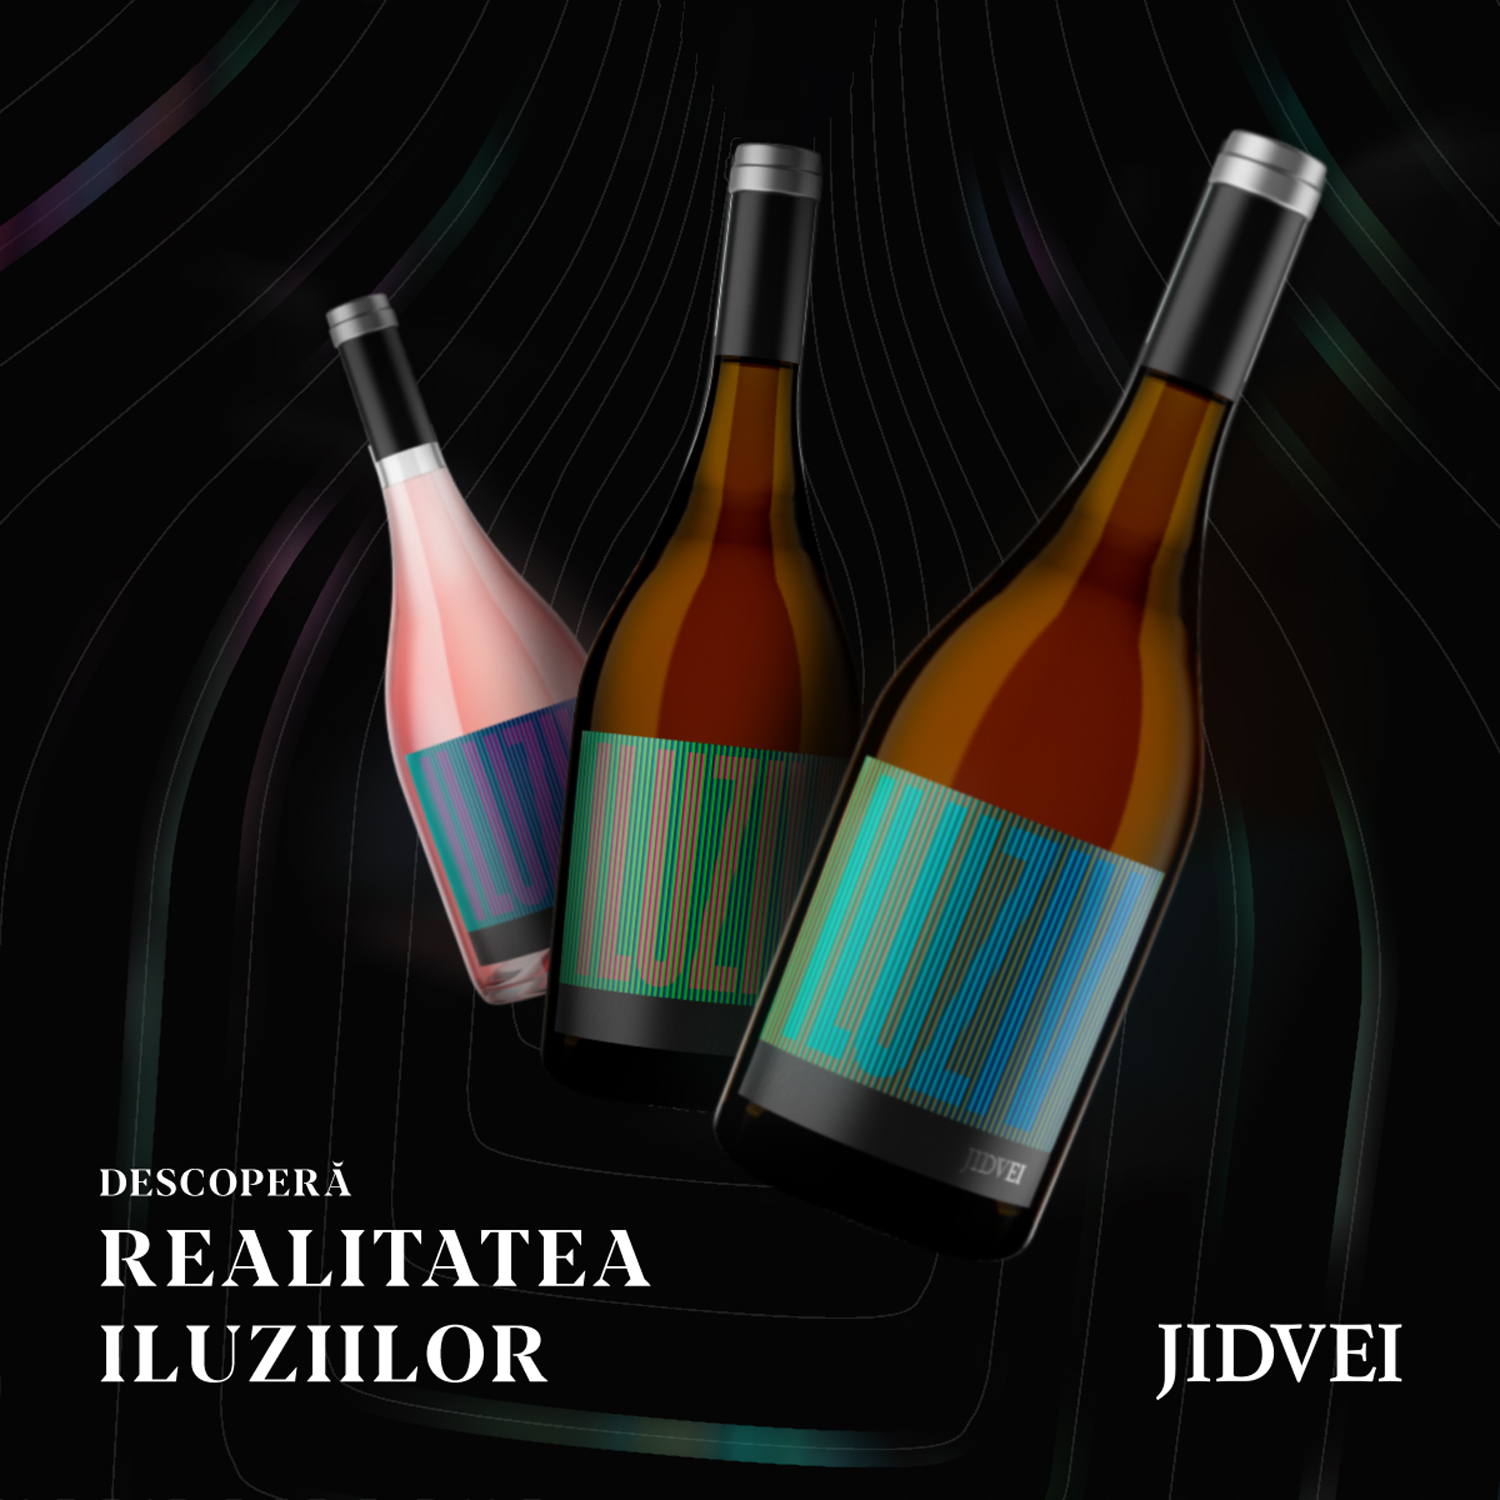 Noua gamă de vinuri, Iluziv by Jidvei, o premieră pe piața vinului din România